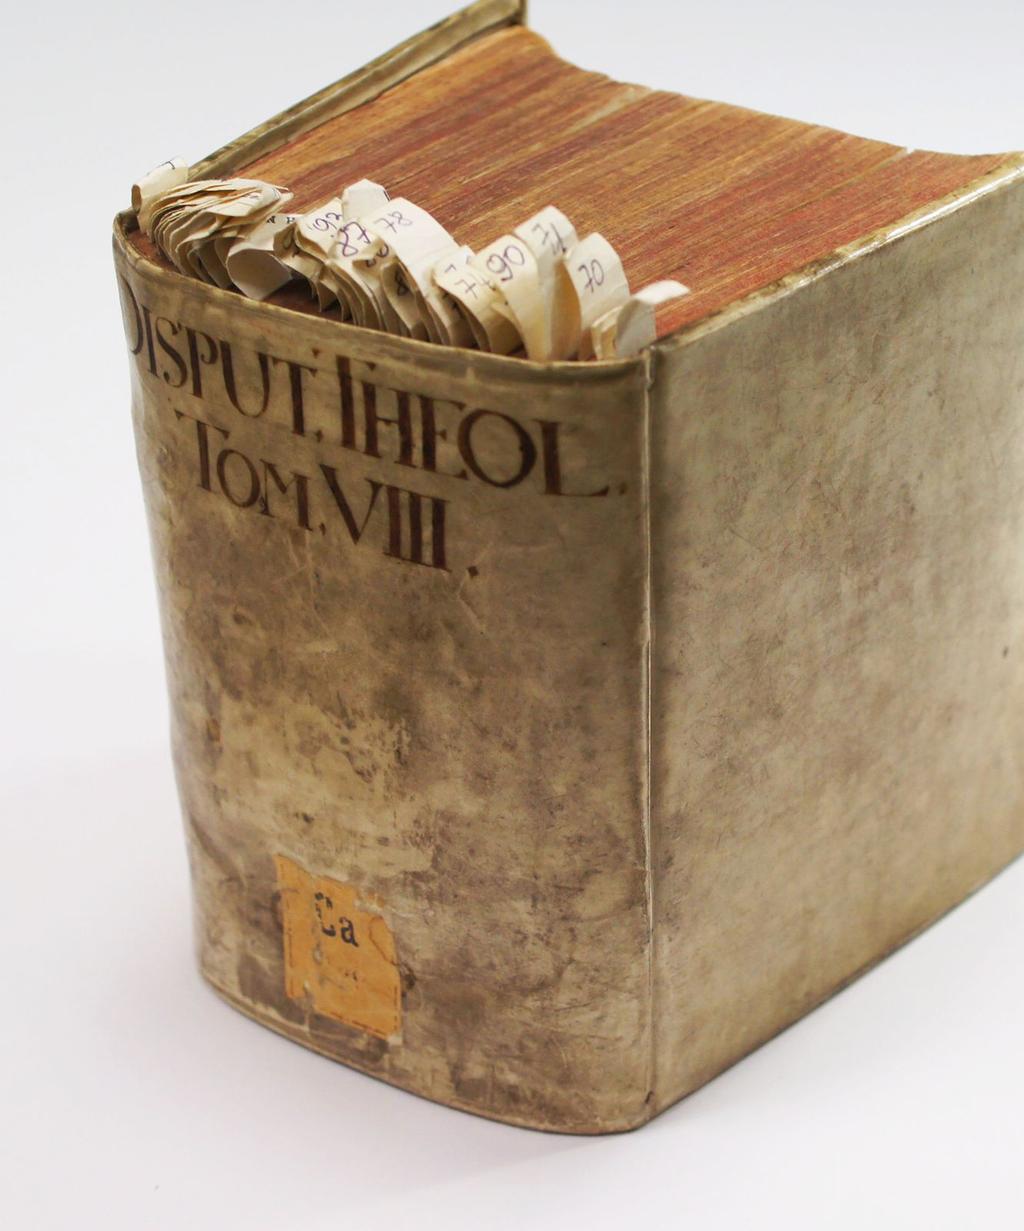 Tom VIII, po 1660 Pięćdziesiąt trzy prace teologów, profesorów i wykładowców z